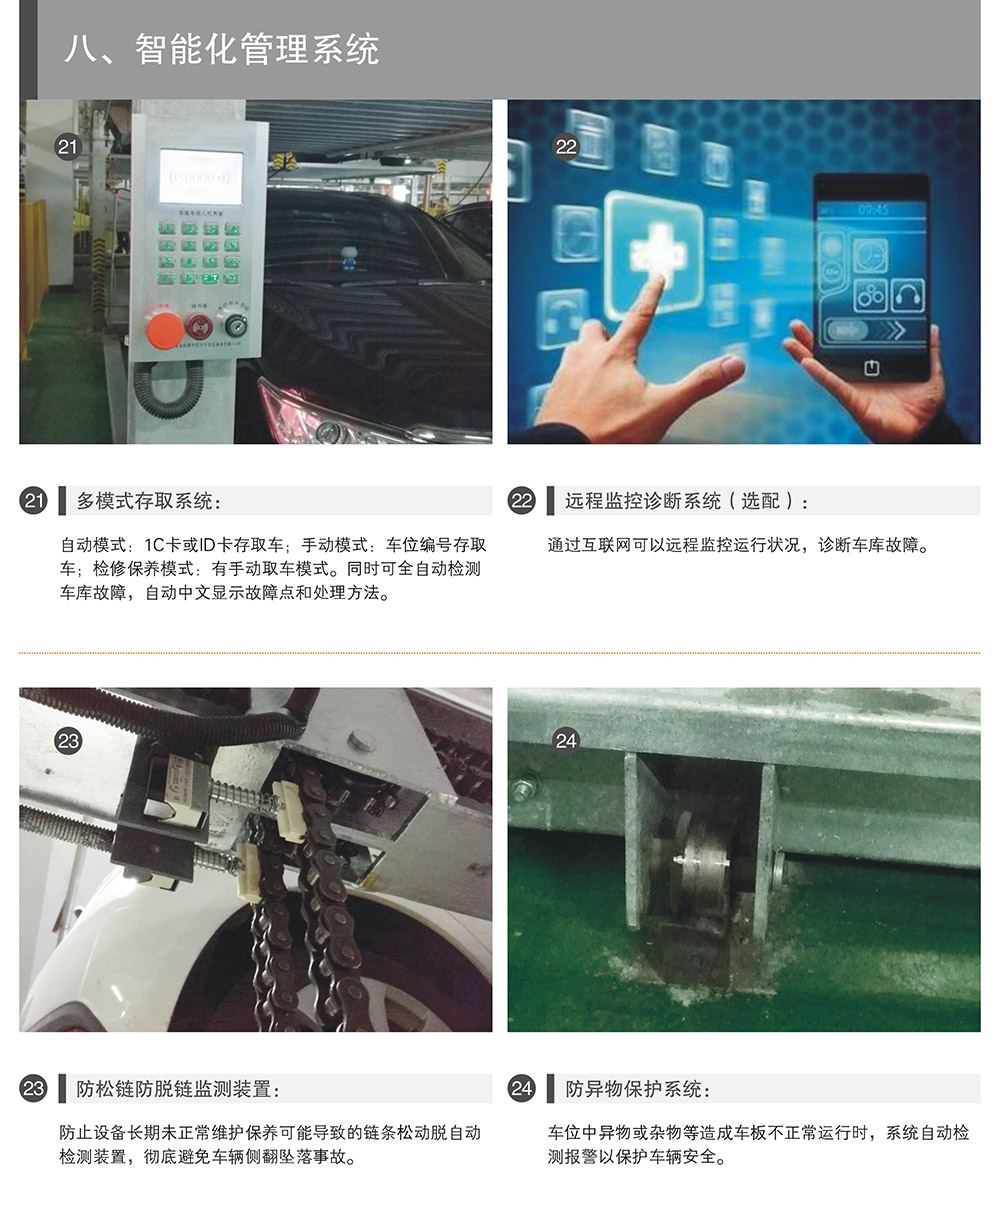 重庆负一正一地坑PSH2D1二层升降横移立体停车设备智能化管理系统.jpg